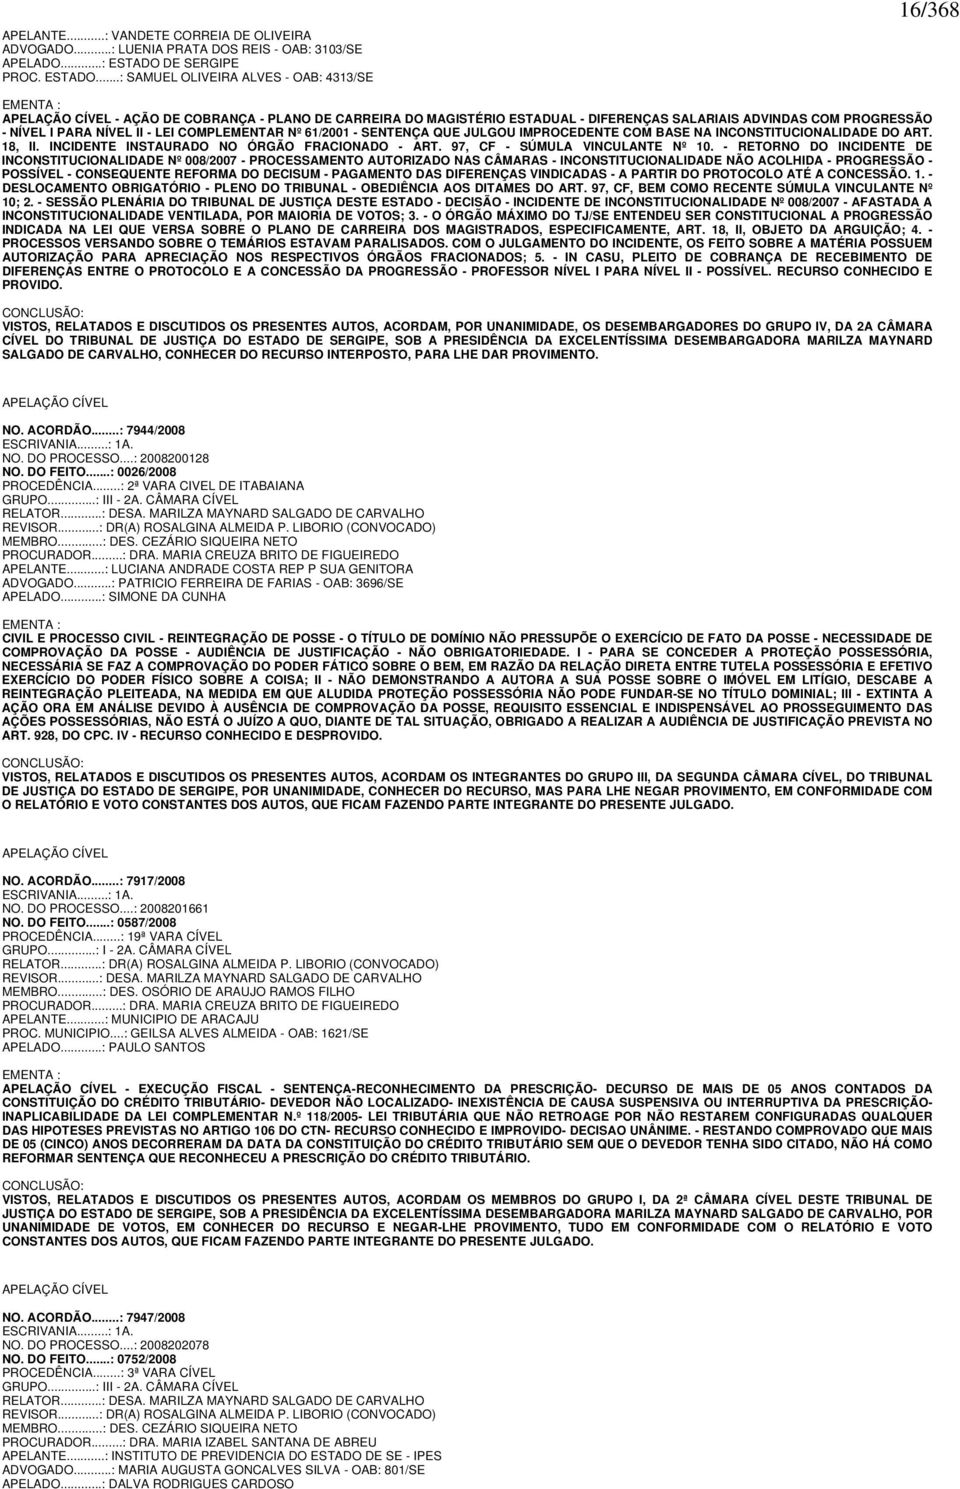 ..: SAMUEL OLIVEIRA ALVES - OAB: 4313/SE 16/368 EMENTA : APELAÇÃO CÍVEL - AÇÃO DE COBRANÇA - PLANO DE CARREIRA DO MAGISTÉRIO ESTADUAL - DIFERENÇAS SALARIAIS ADVINDAS COM PROGRESSÃO - NÍVEL I PARA